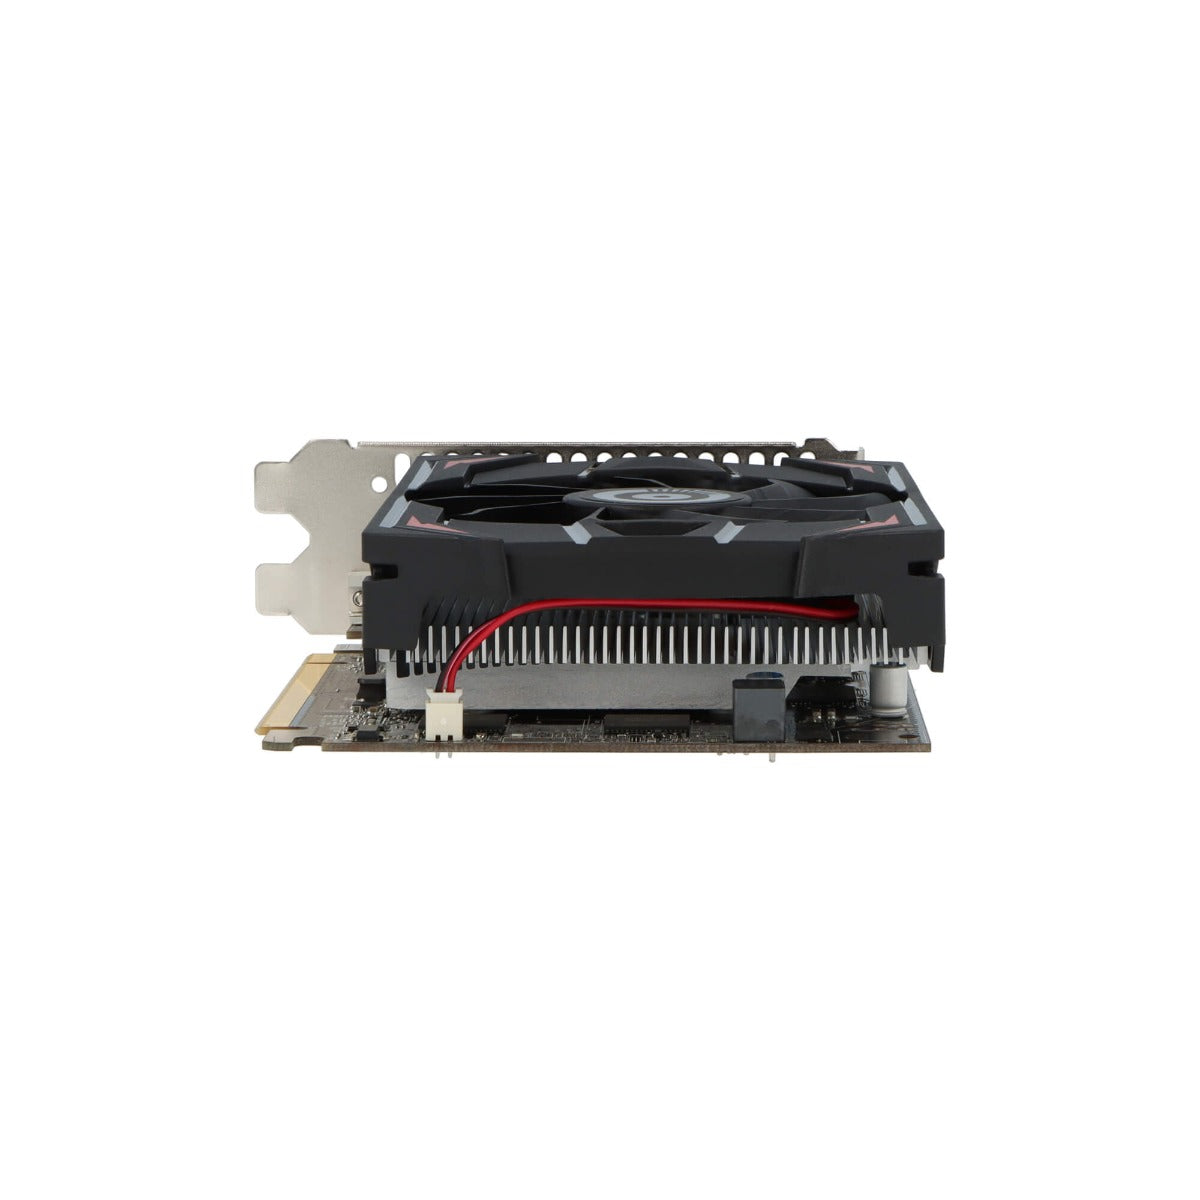 OCPC Radeon RX 550 4GB GDDR5